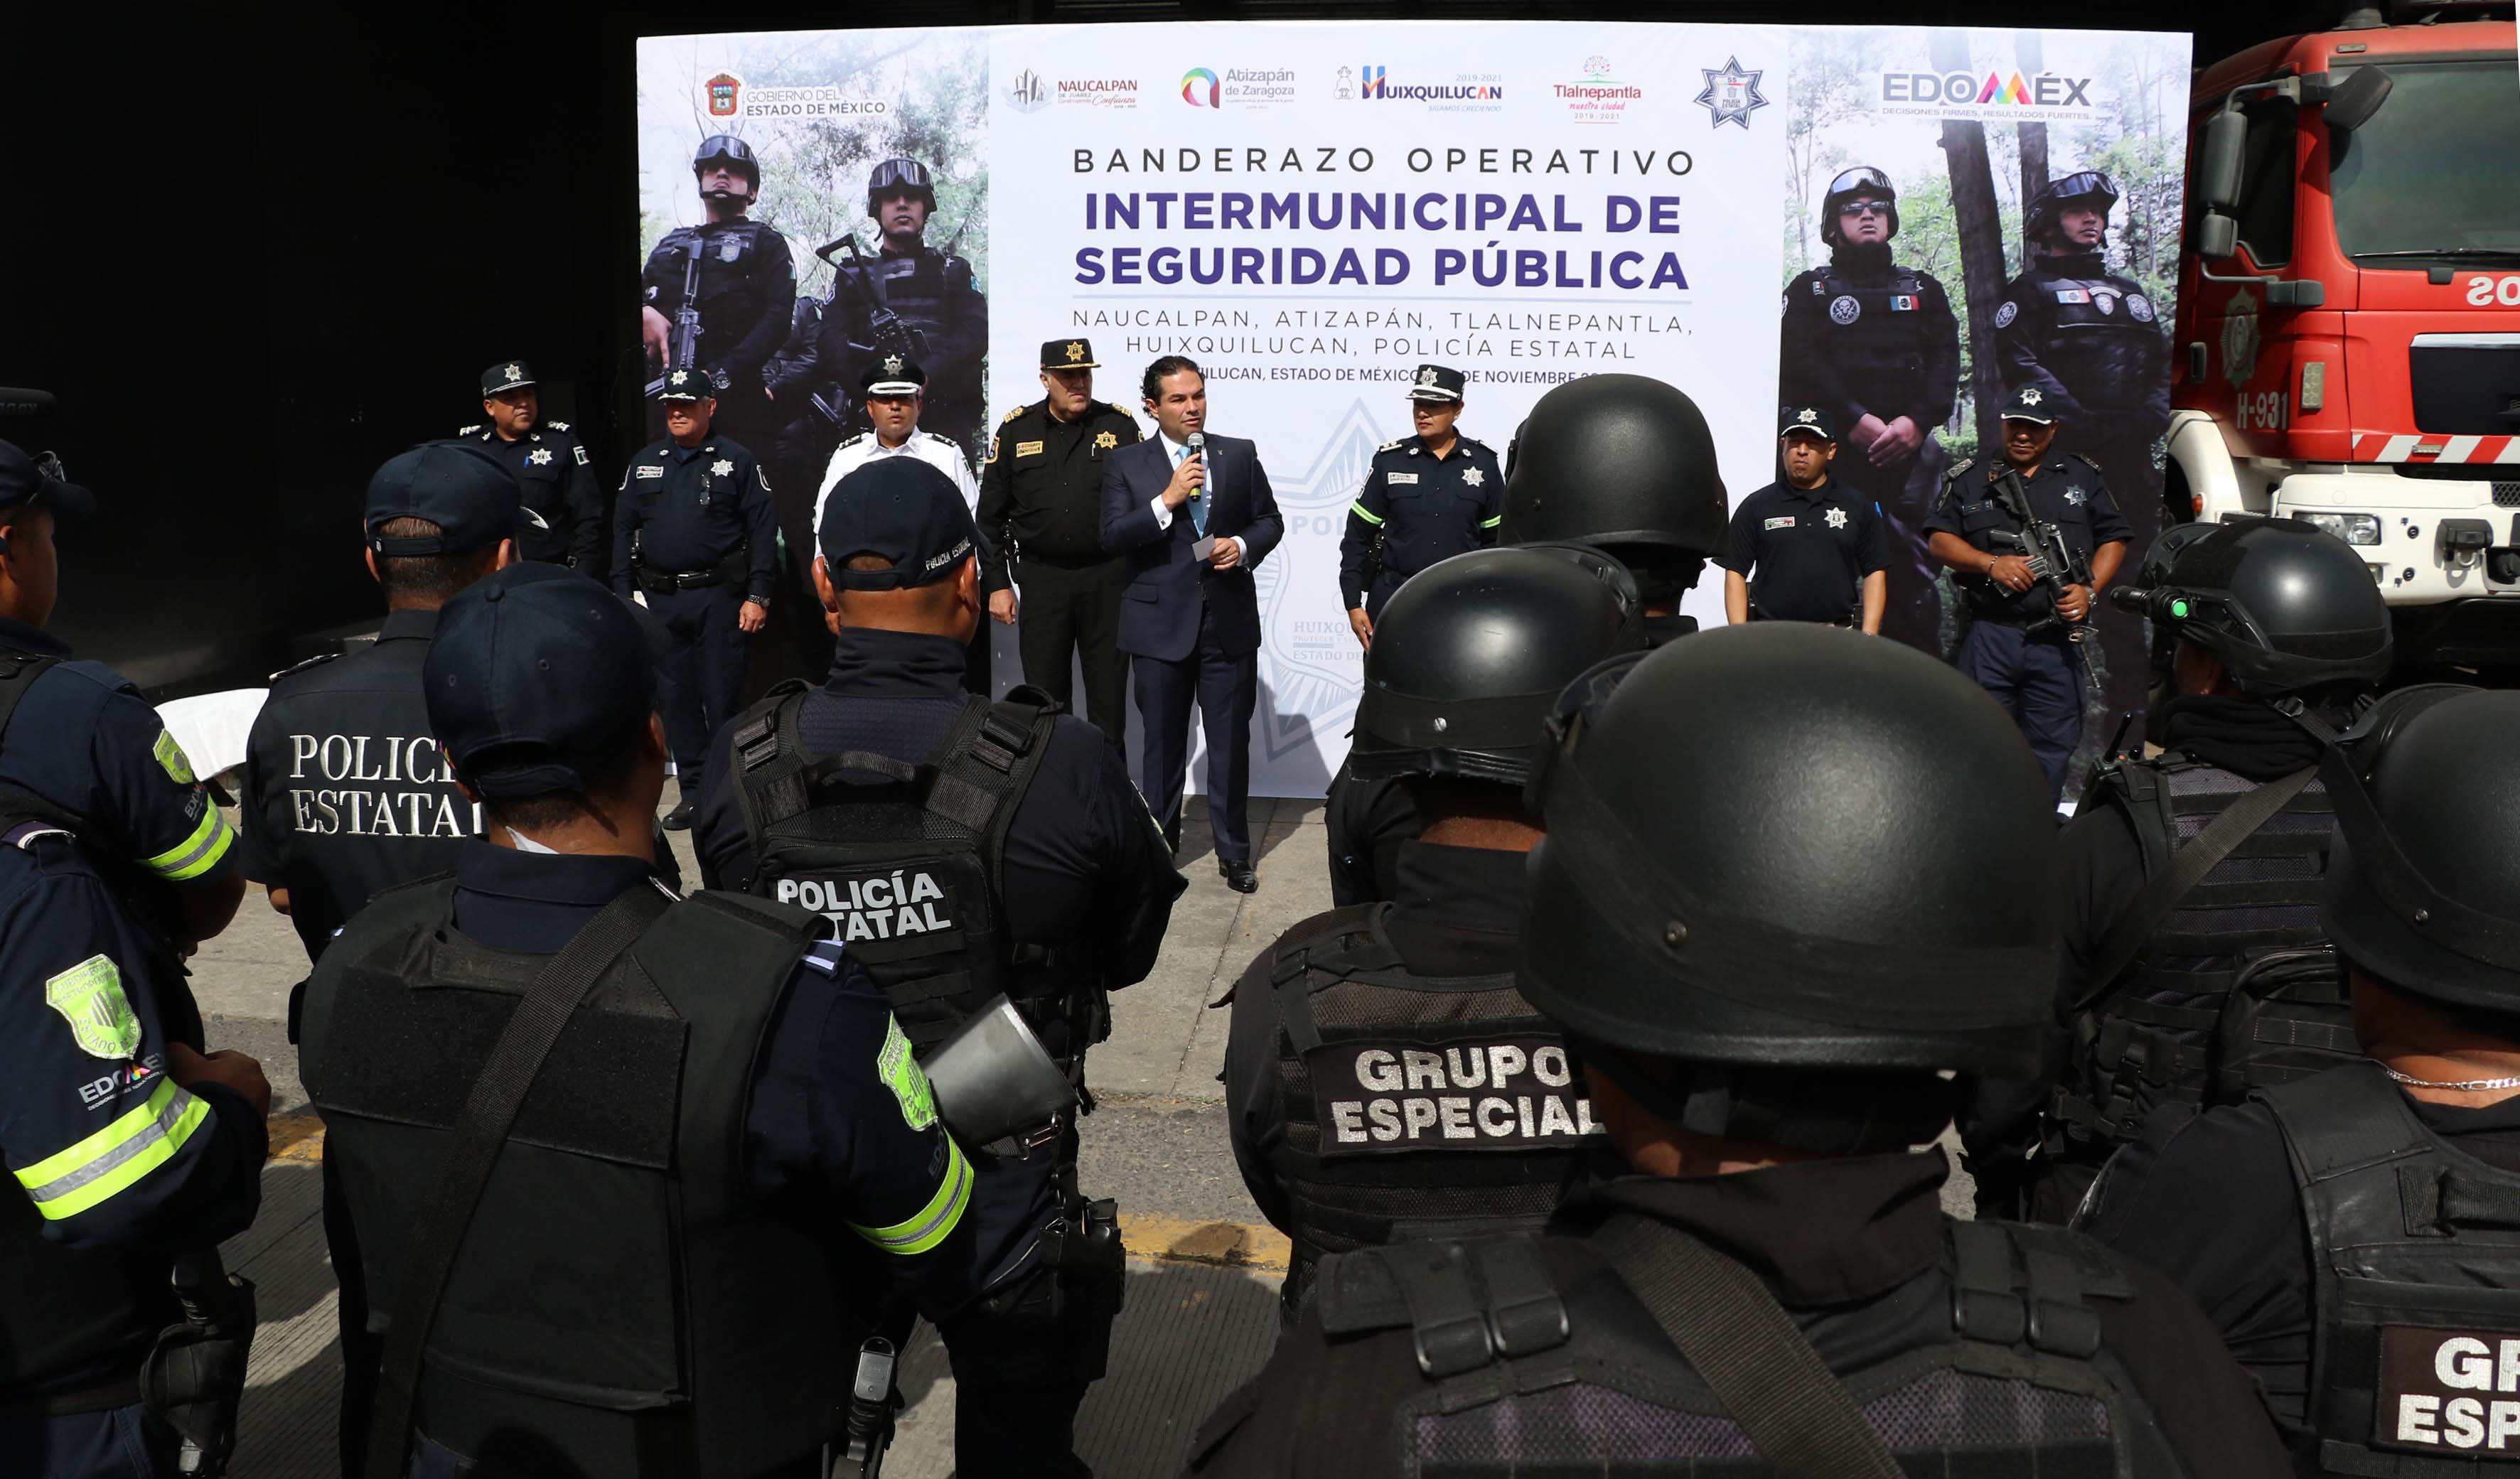 Policias de Huixquilucan, Naucalpan, Tlalnepantla y Atizapán inician programa intermunicipal de seguridad apoyados por la policía estatal y Guardia Nacional